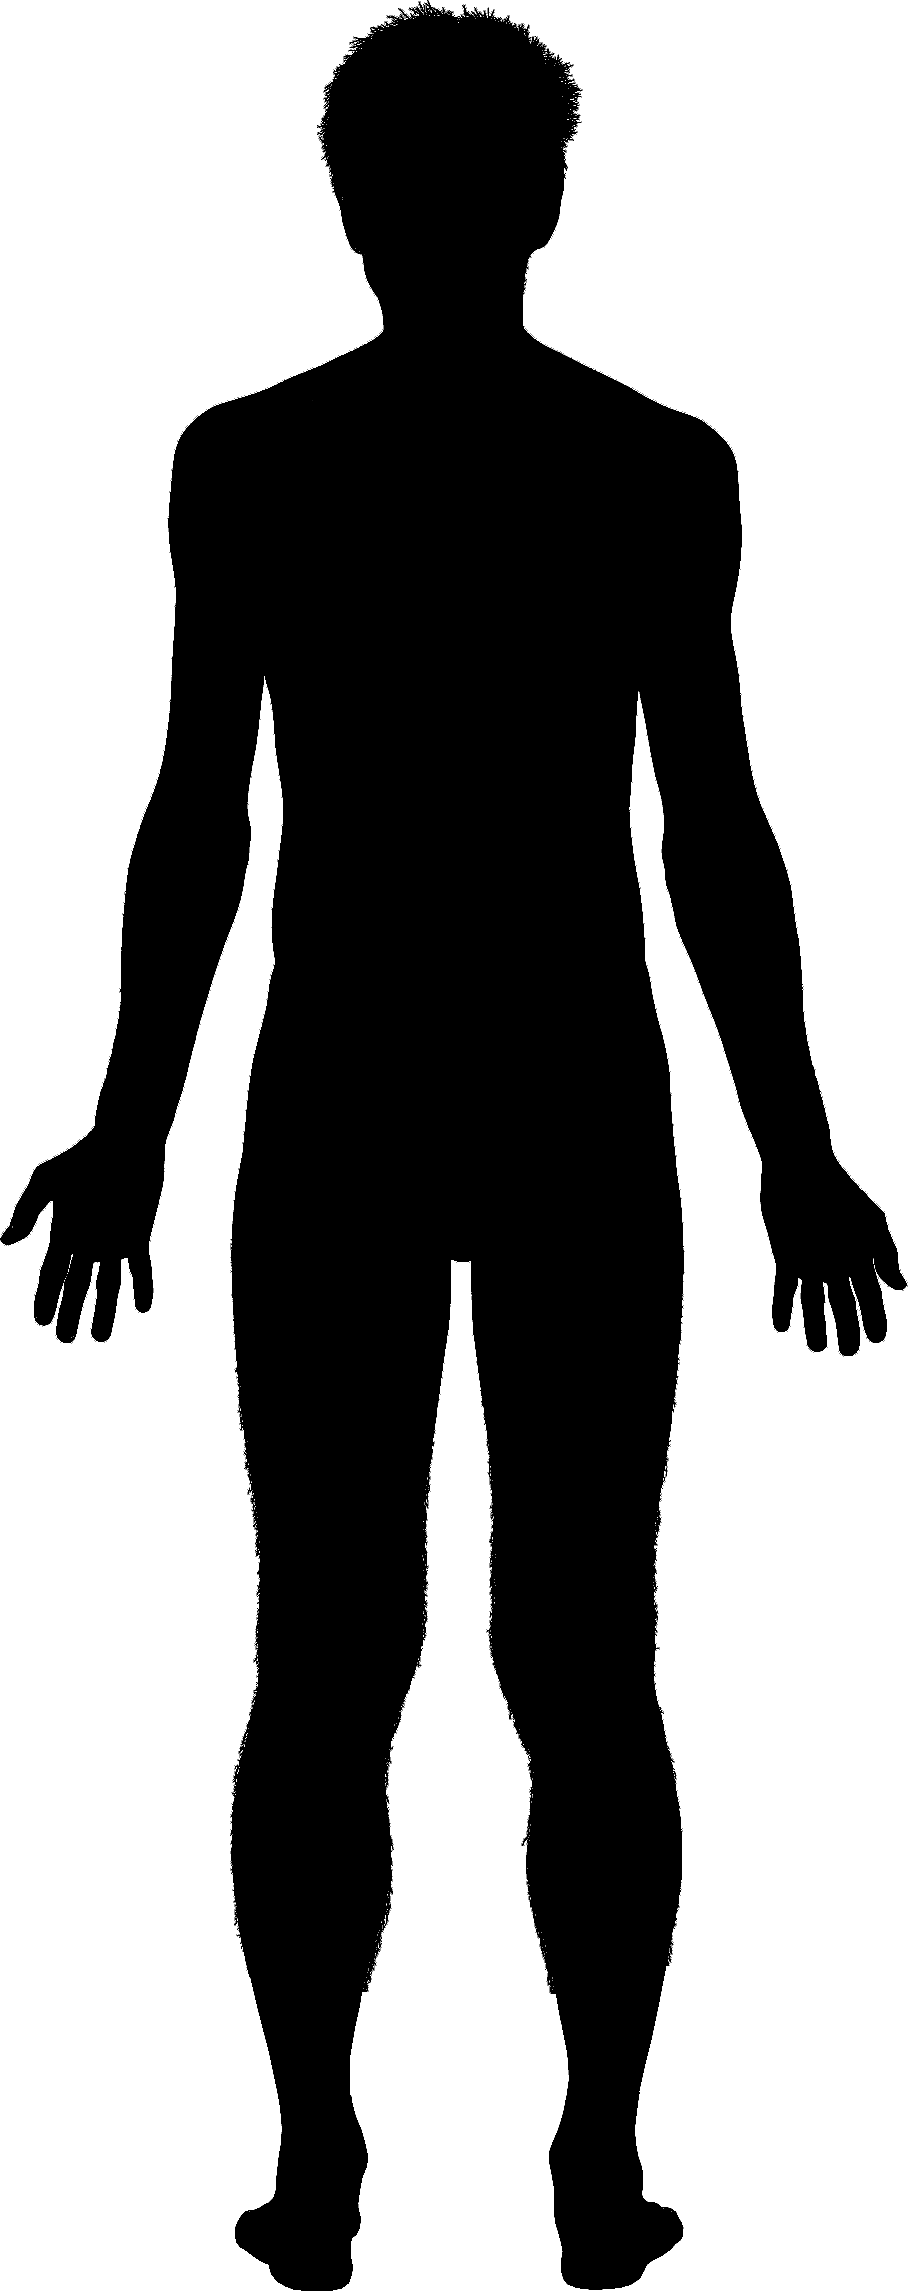 Clipart body silhouette